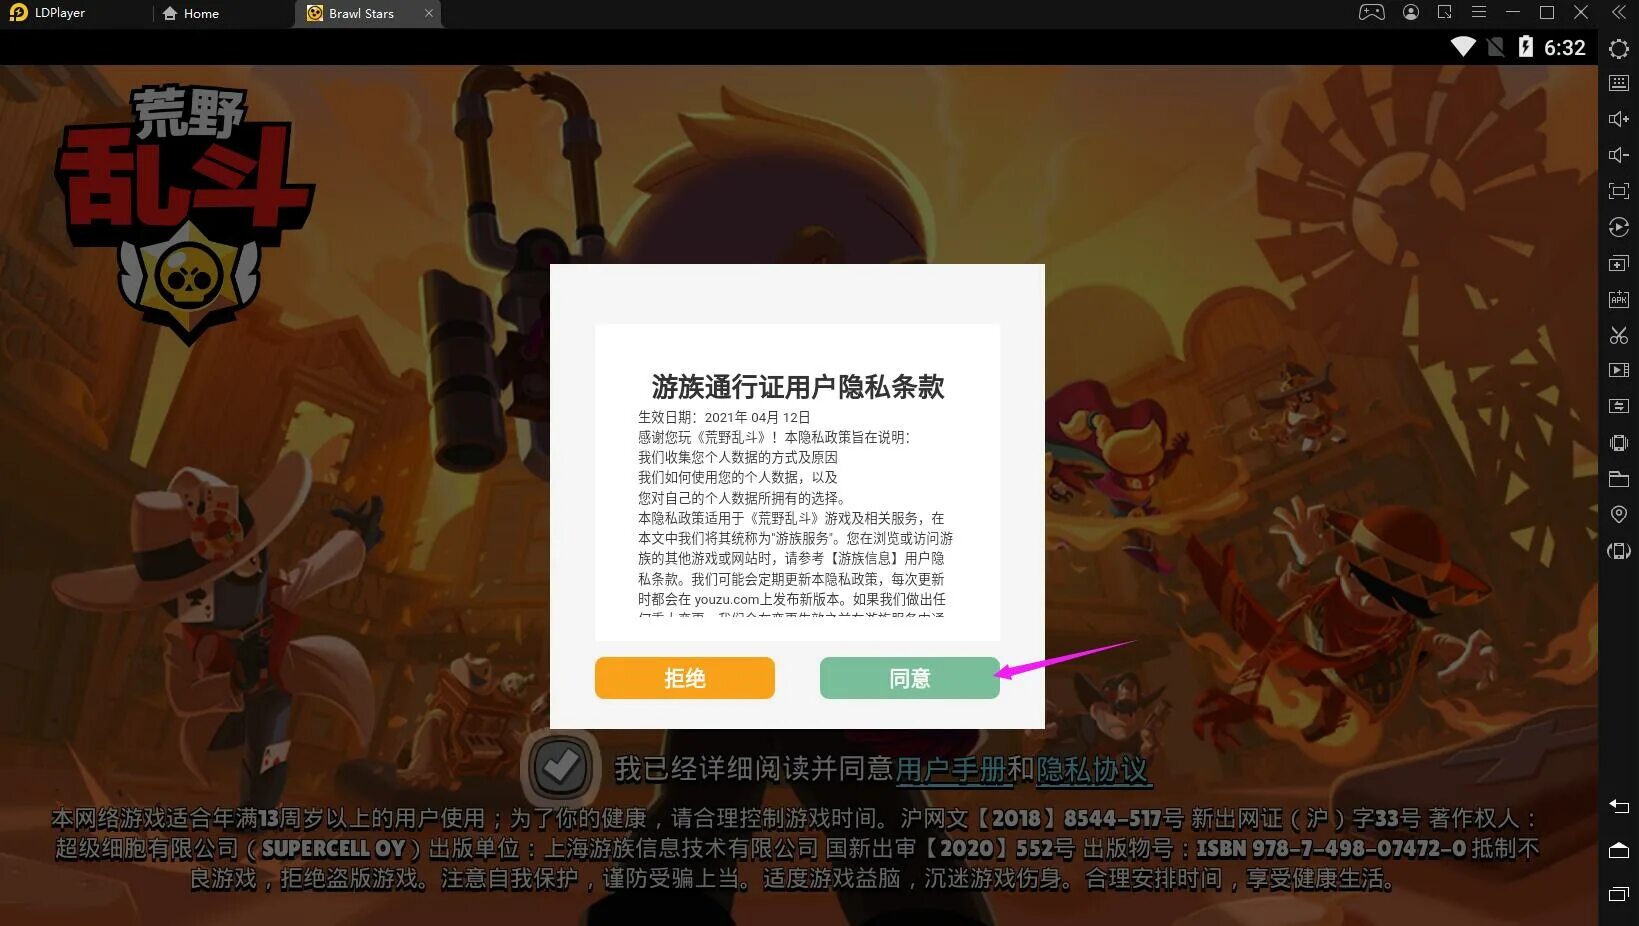 Brawl Stars китайский игру. Как зарегистрироваться в китайском Brawl. Китайский код чтобы зарегистрироваться в китайский Brawl Stars. Как зарегистрироваться в китайский Brawl Stars. Китайский бравл последняя версия 2024